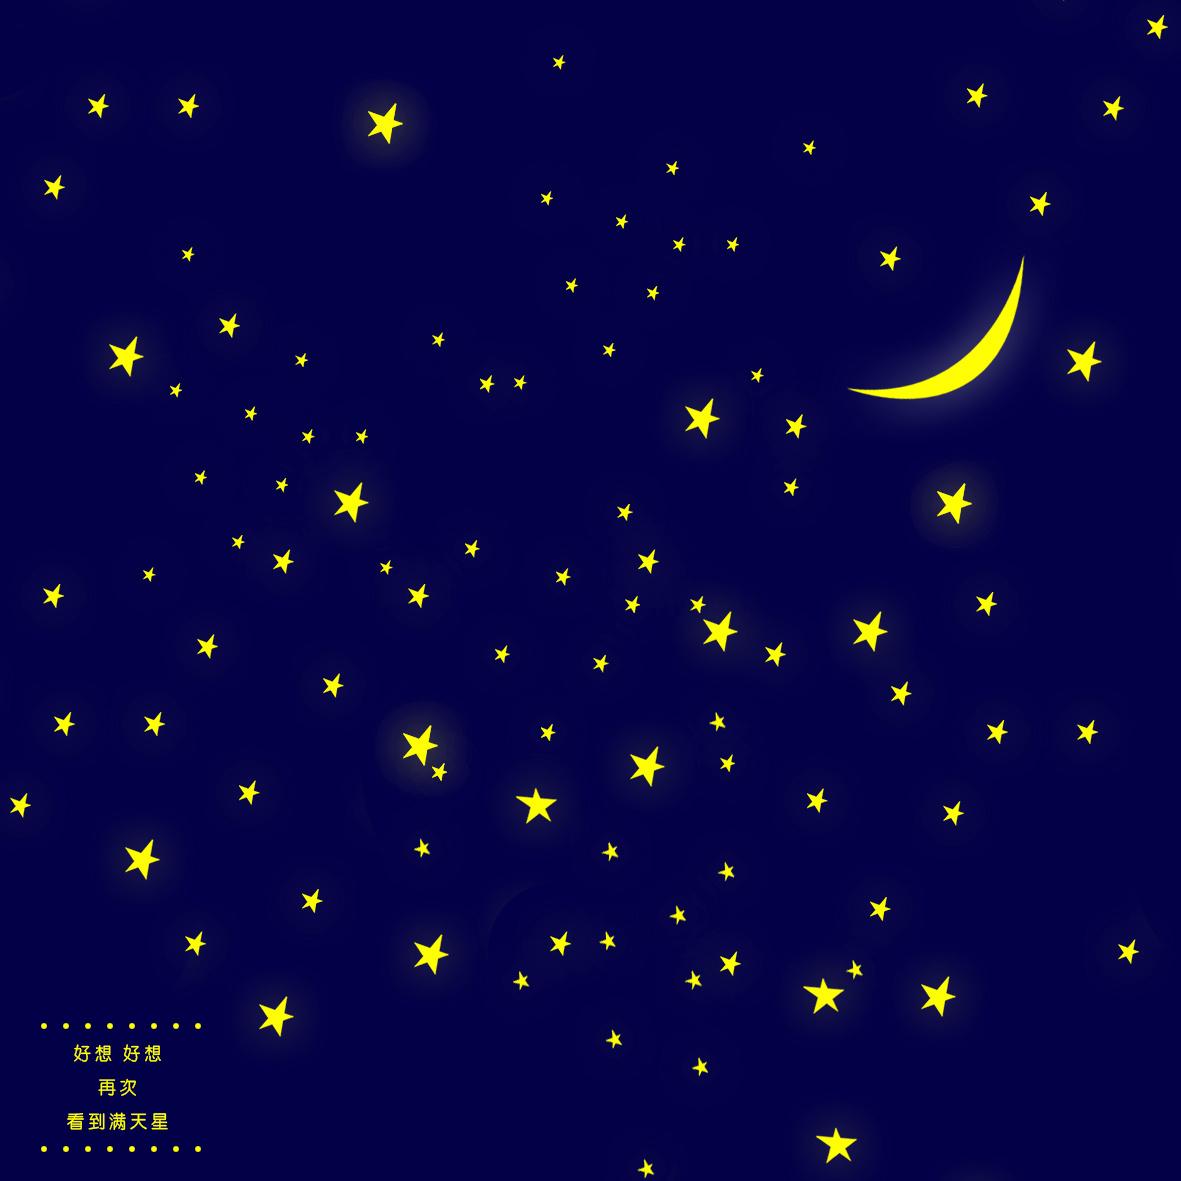 唯美夜色月亮星空摄影高清图片系列六_素材公社_tooopen.com